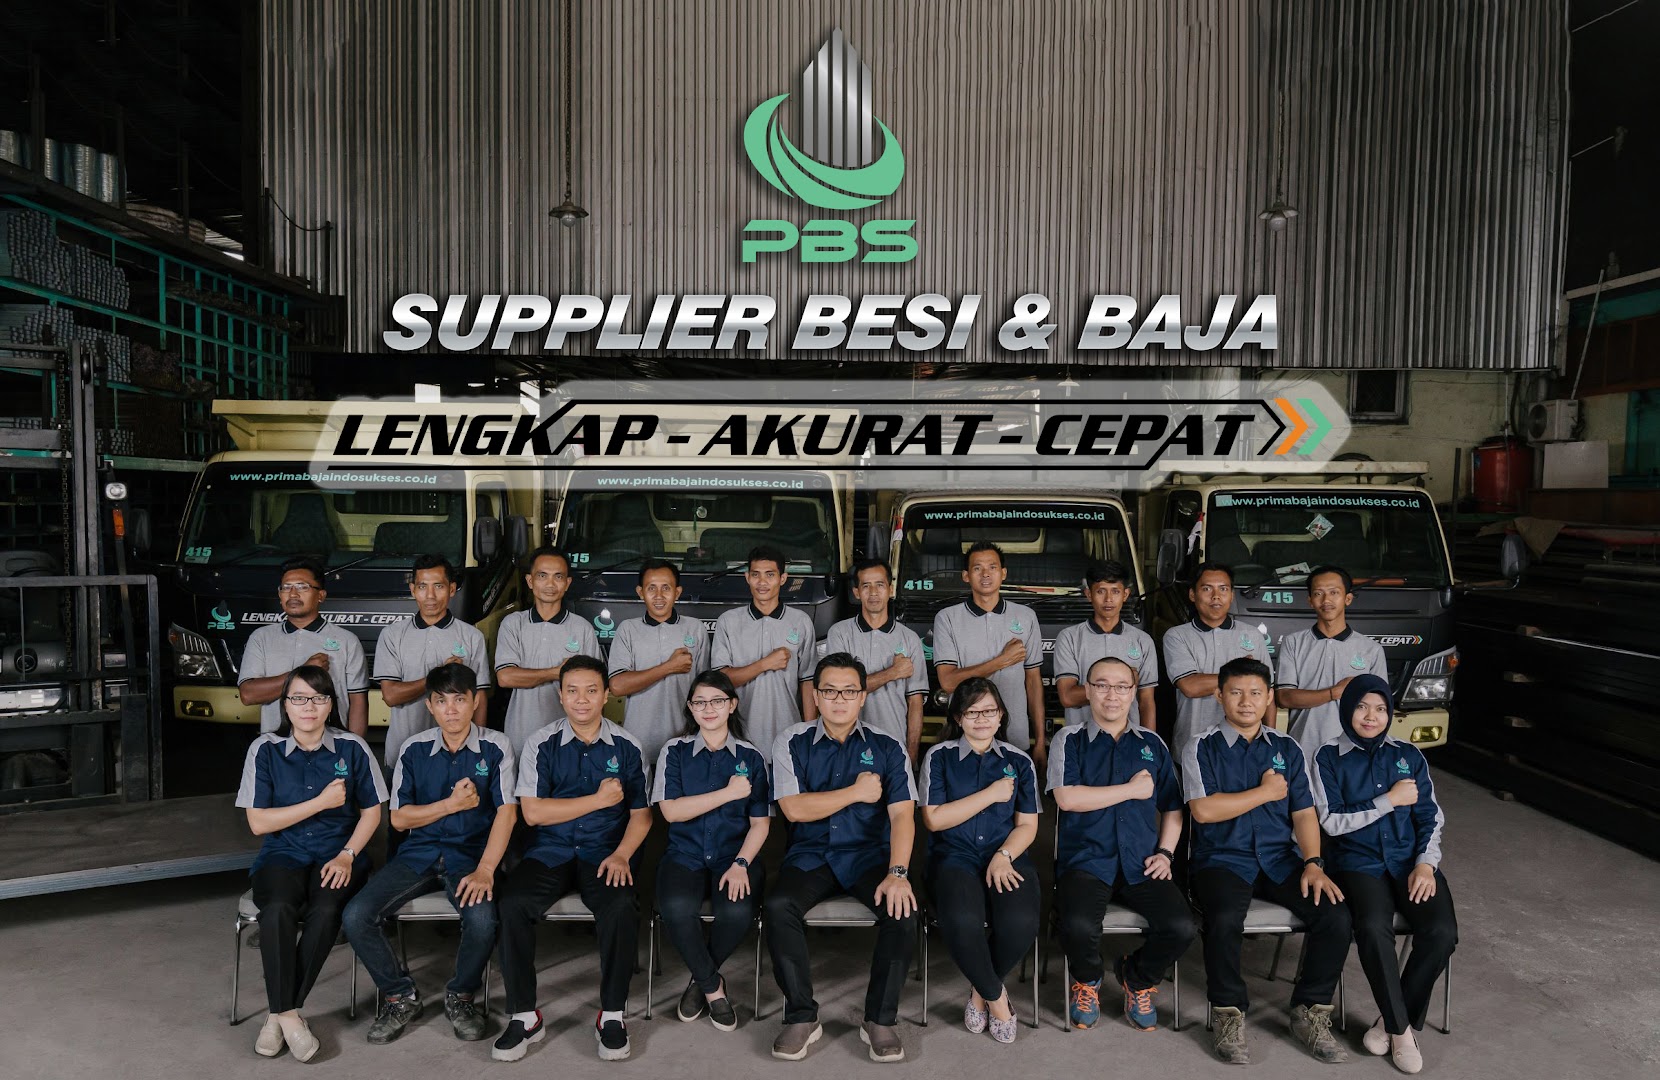 Gambar Prima Bajaindo Sukses - Distributor & Supplier Besi & Baja - Tangerang